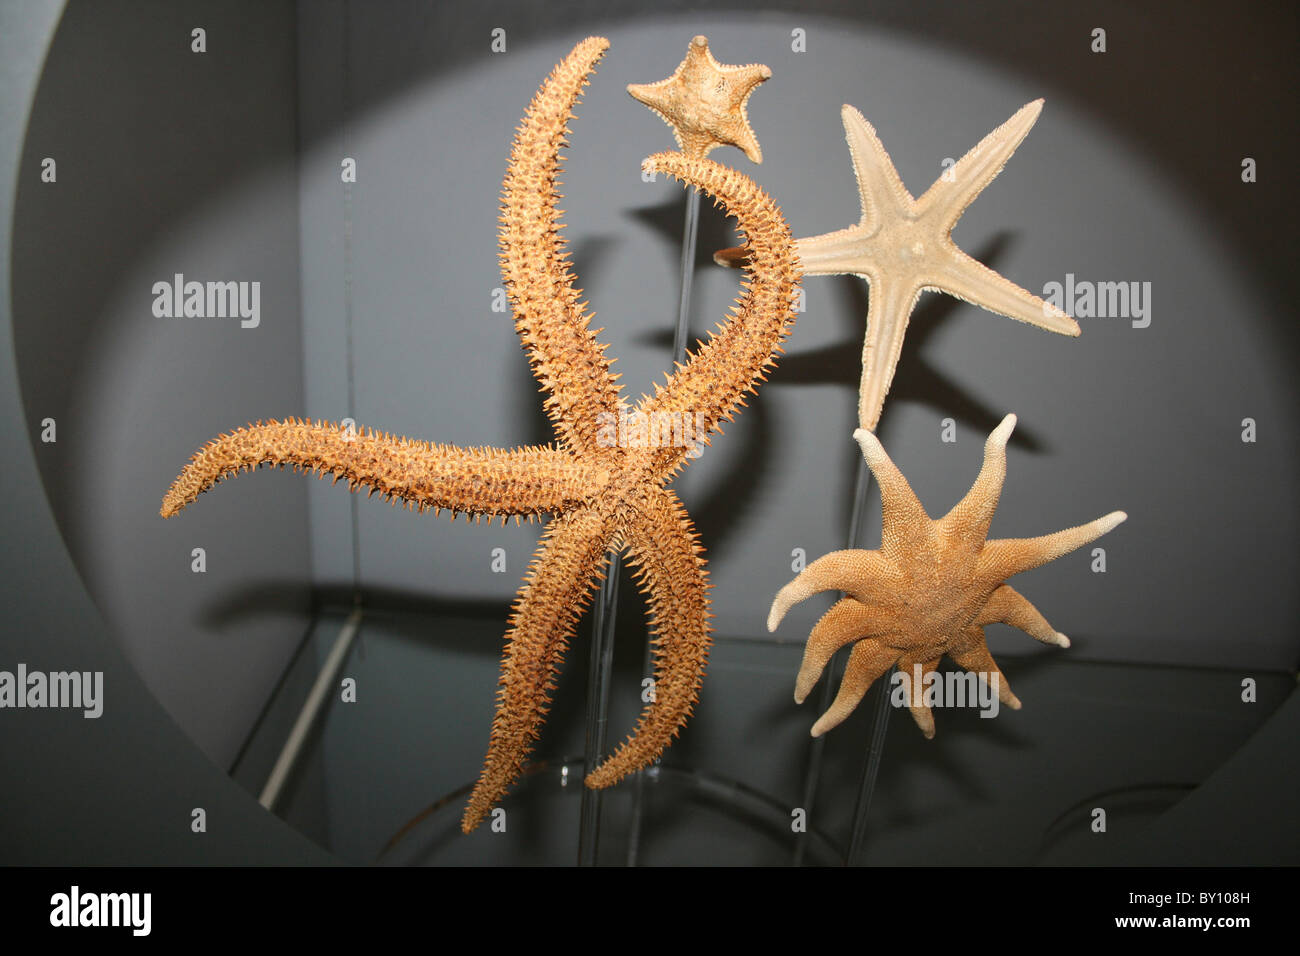 Musée présentant diverses espèces d'étoiles de mer Banque D'Images